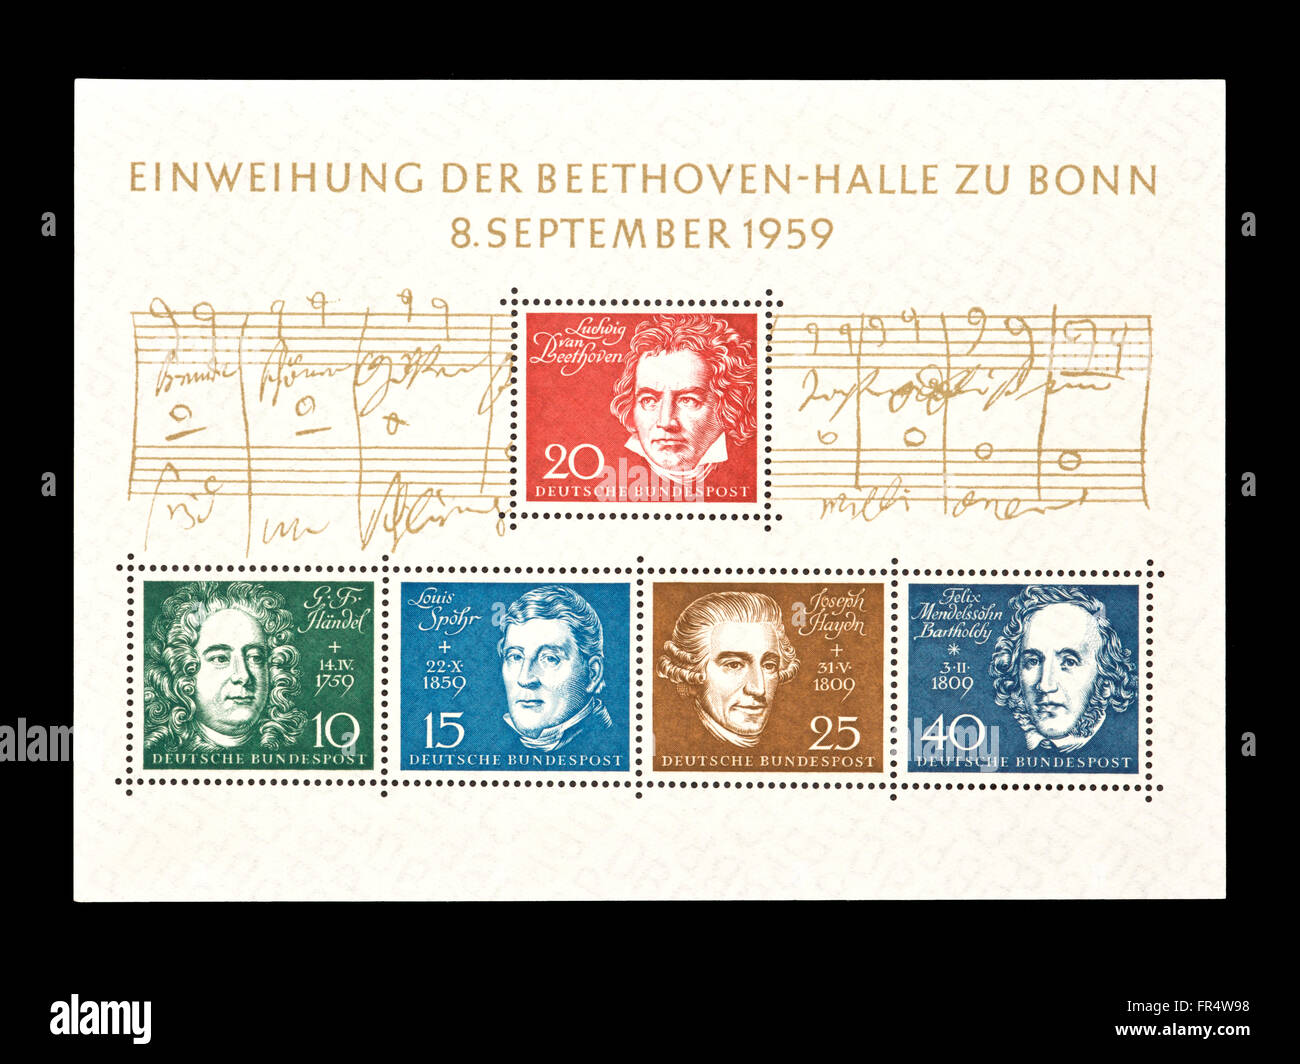 Sonderblock von Deutschland mit Komponisten, zur Eröffnung der Beethovenhalle in Bonn Stockfoto